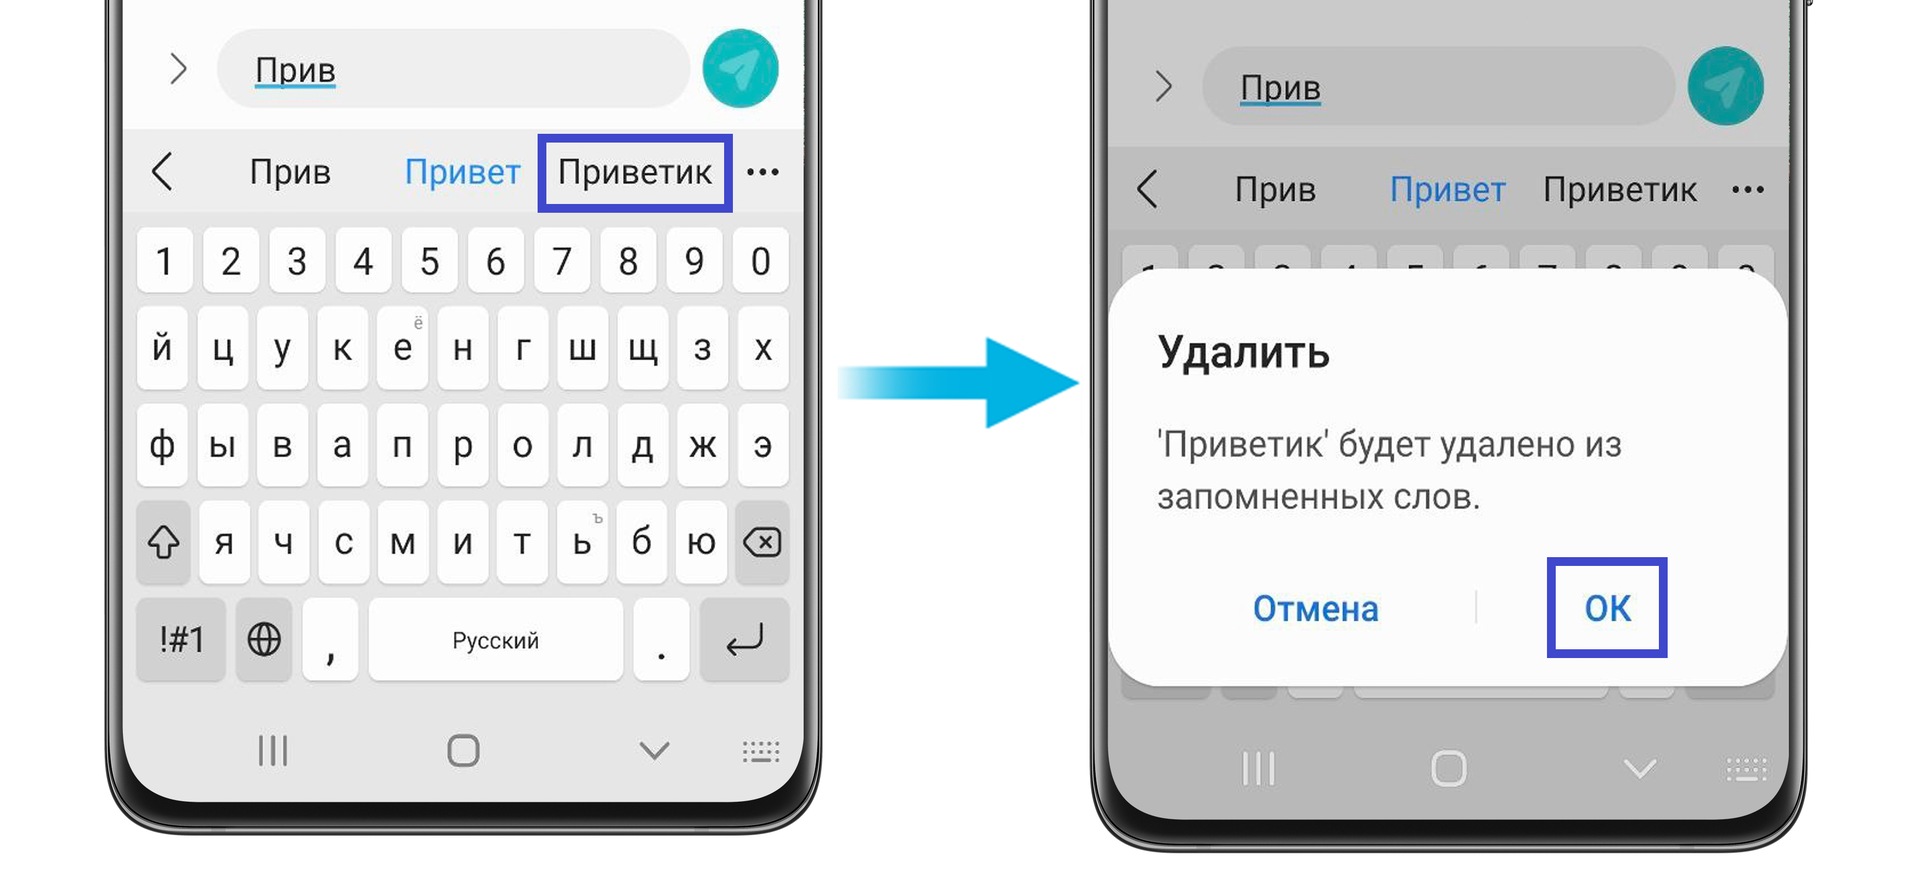 Как установить телеграмм на телефон самсунг на русском языке пошагово фото 102